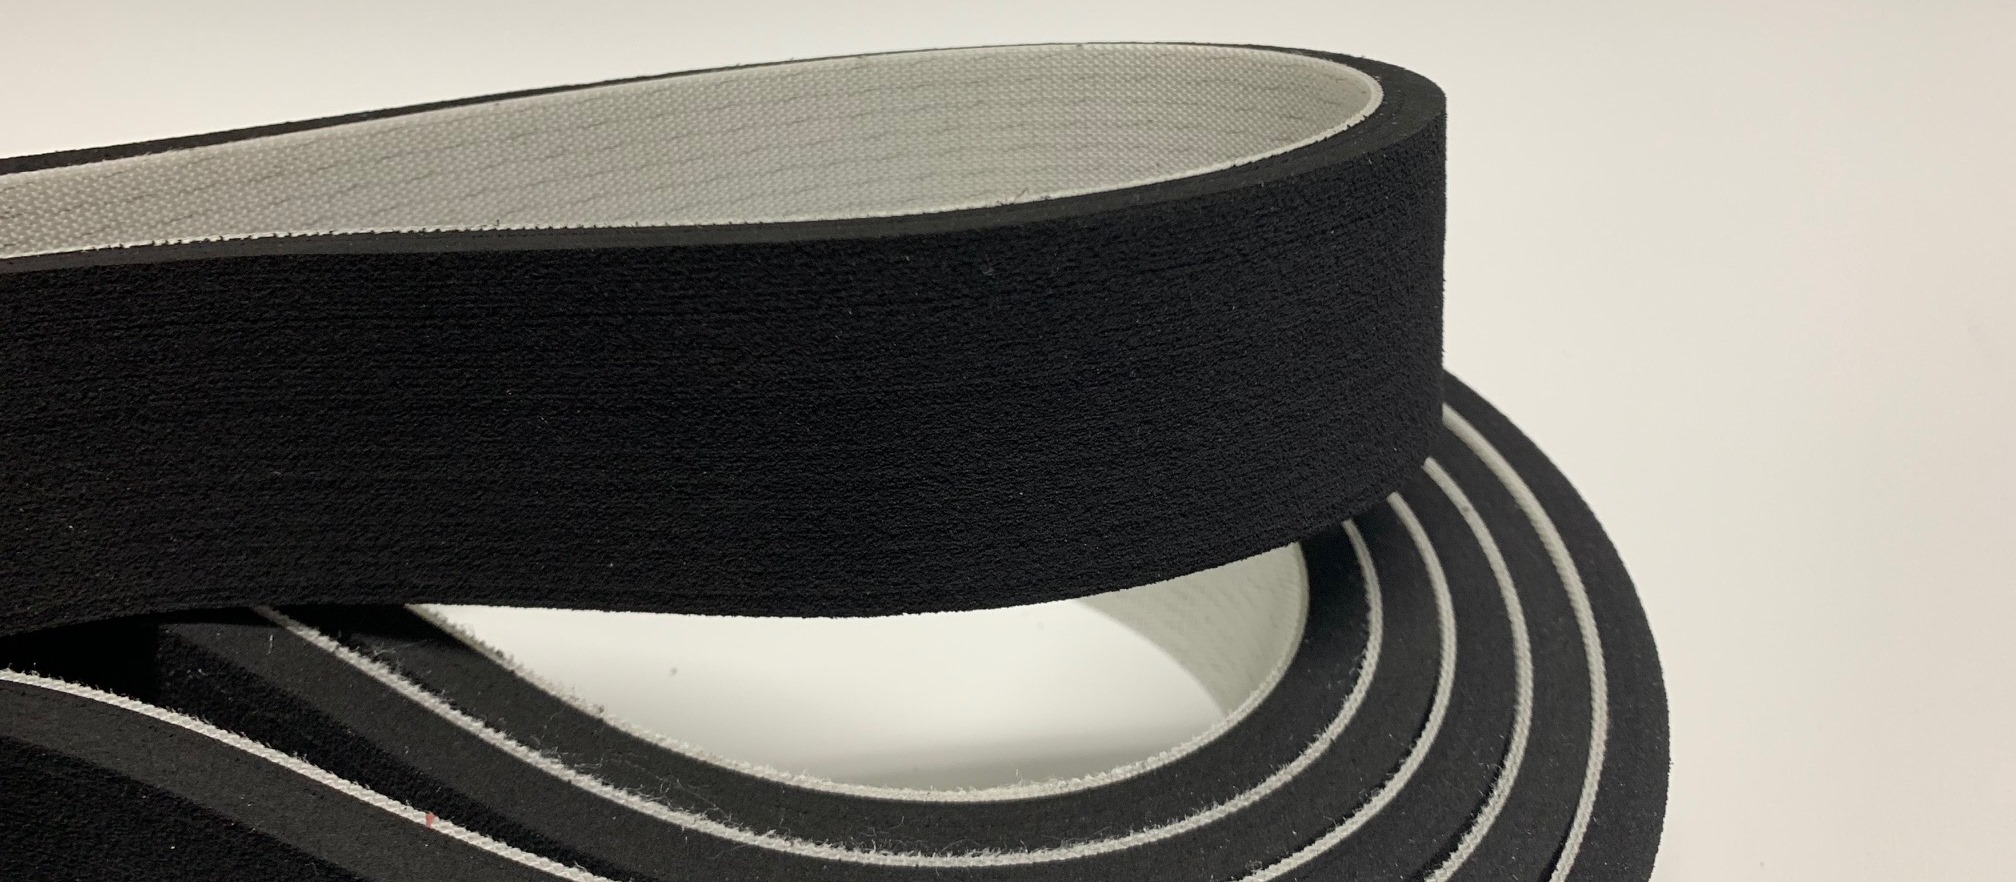 Porol coating timing belt & conveyor belt